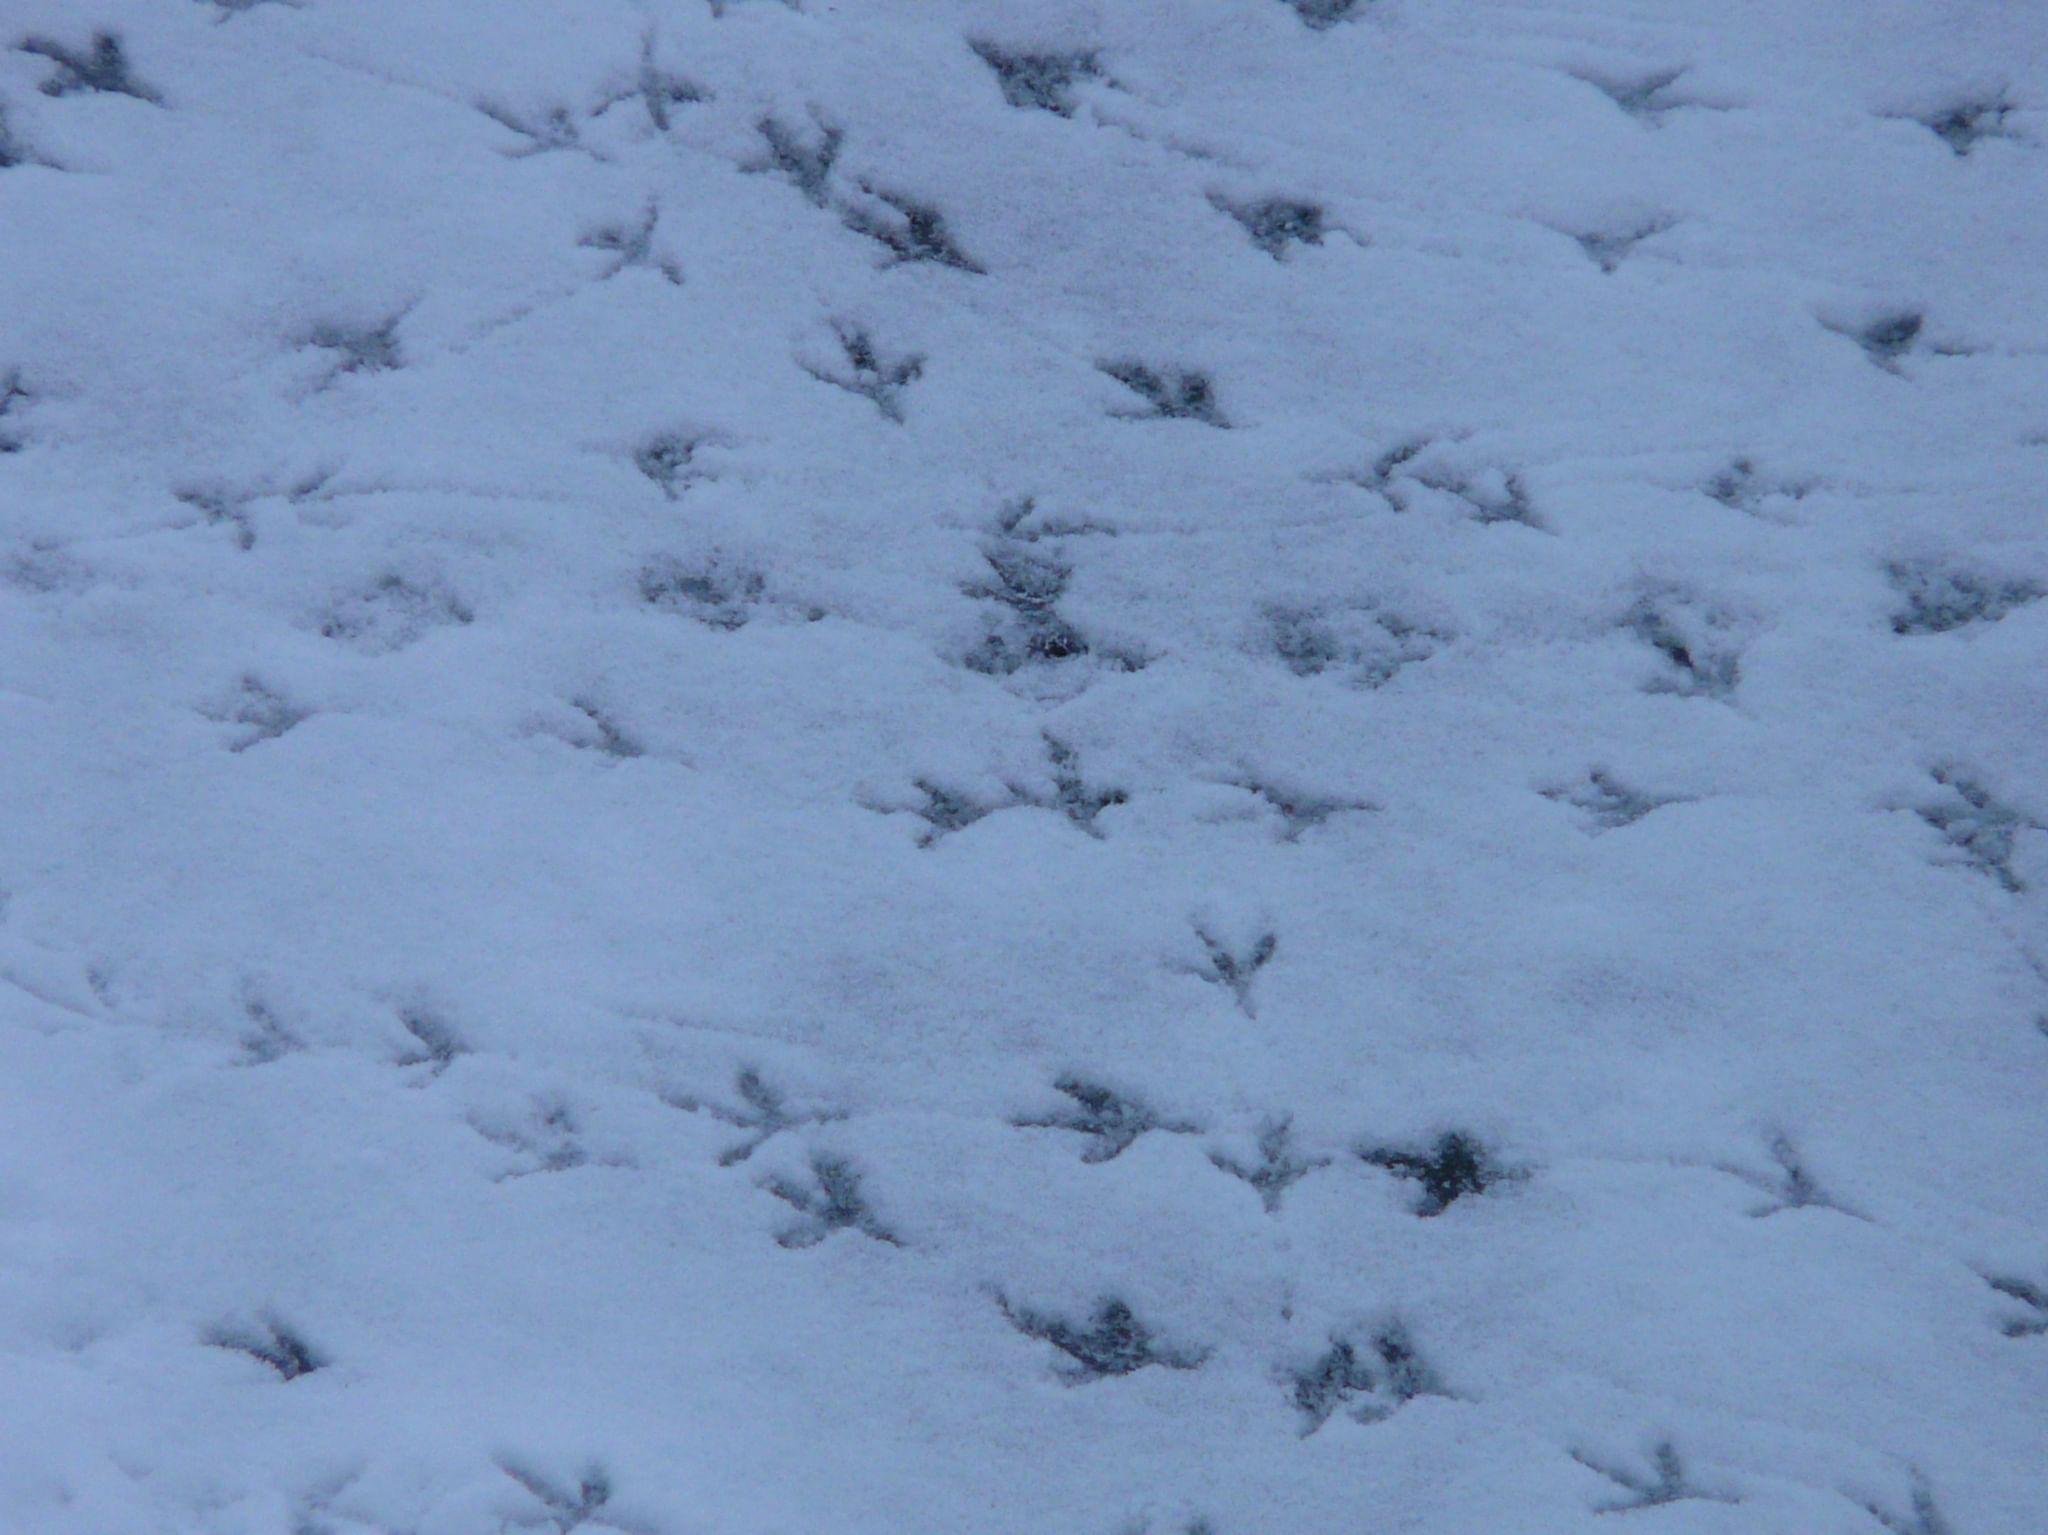 Следы на снегу фото с названиями птиц